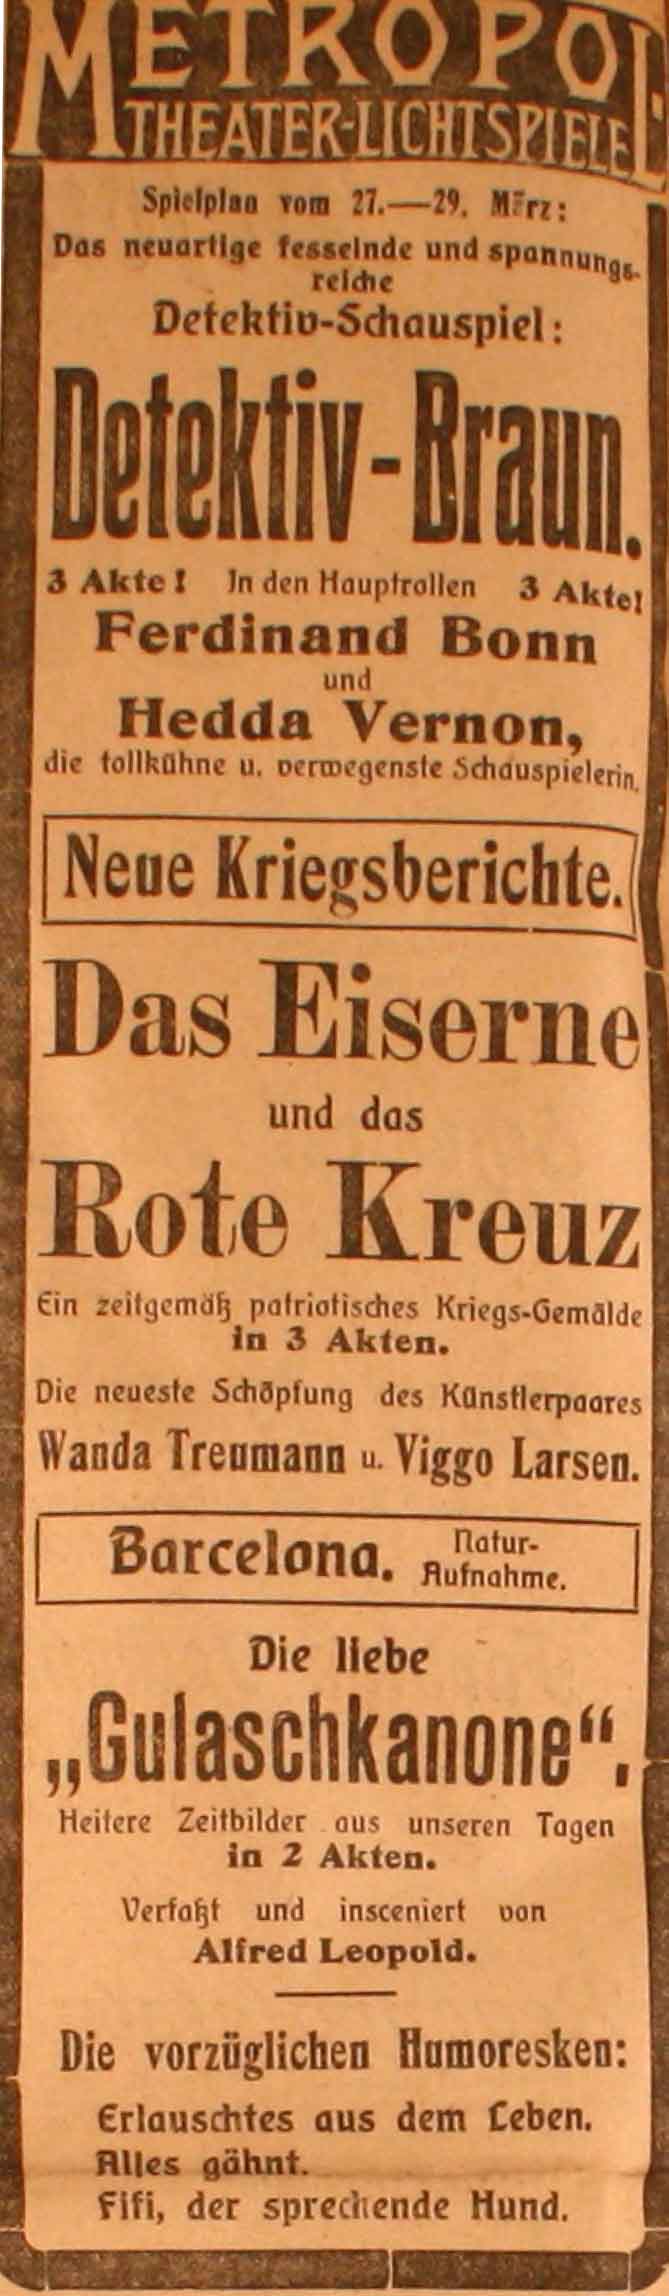 Anzeige im General-Anzeiger vom 27. März 1915